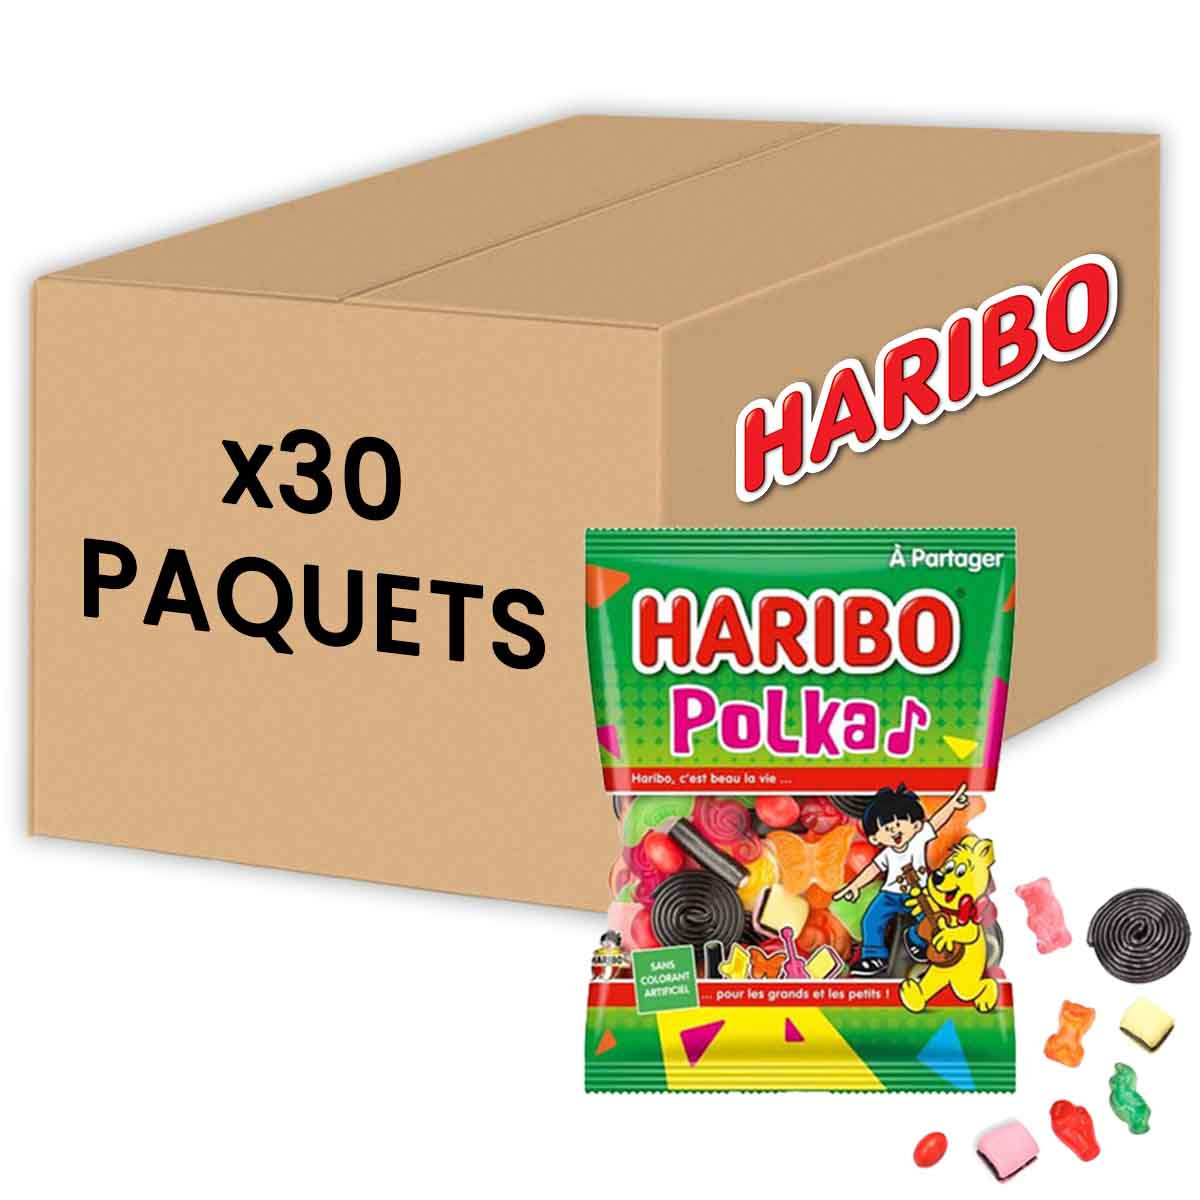 Haribo Polka de 120 gr par 30 paquets : Achat en Ligne - Coffee-Webstore